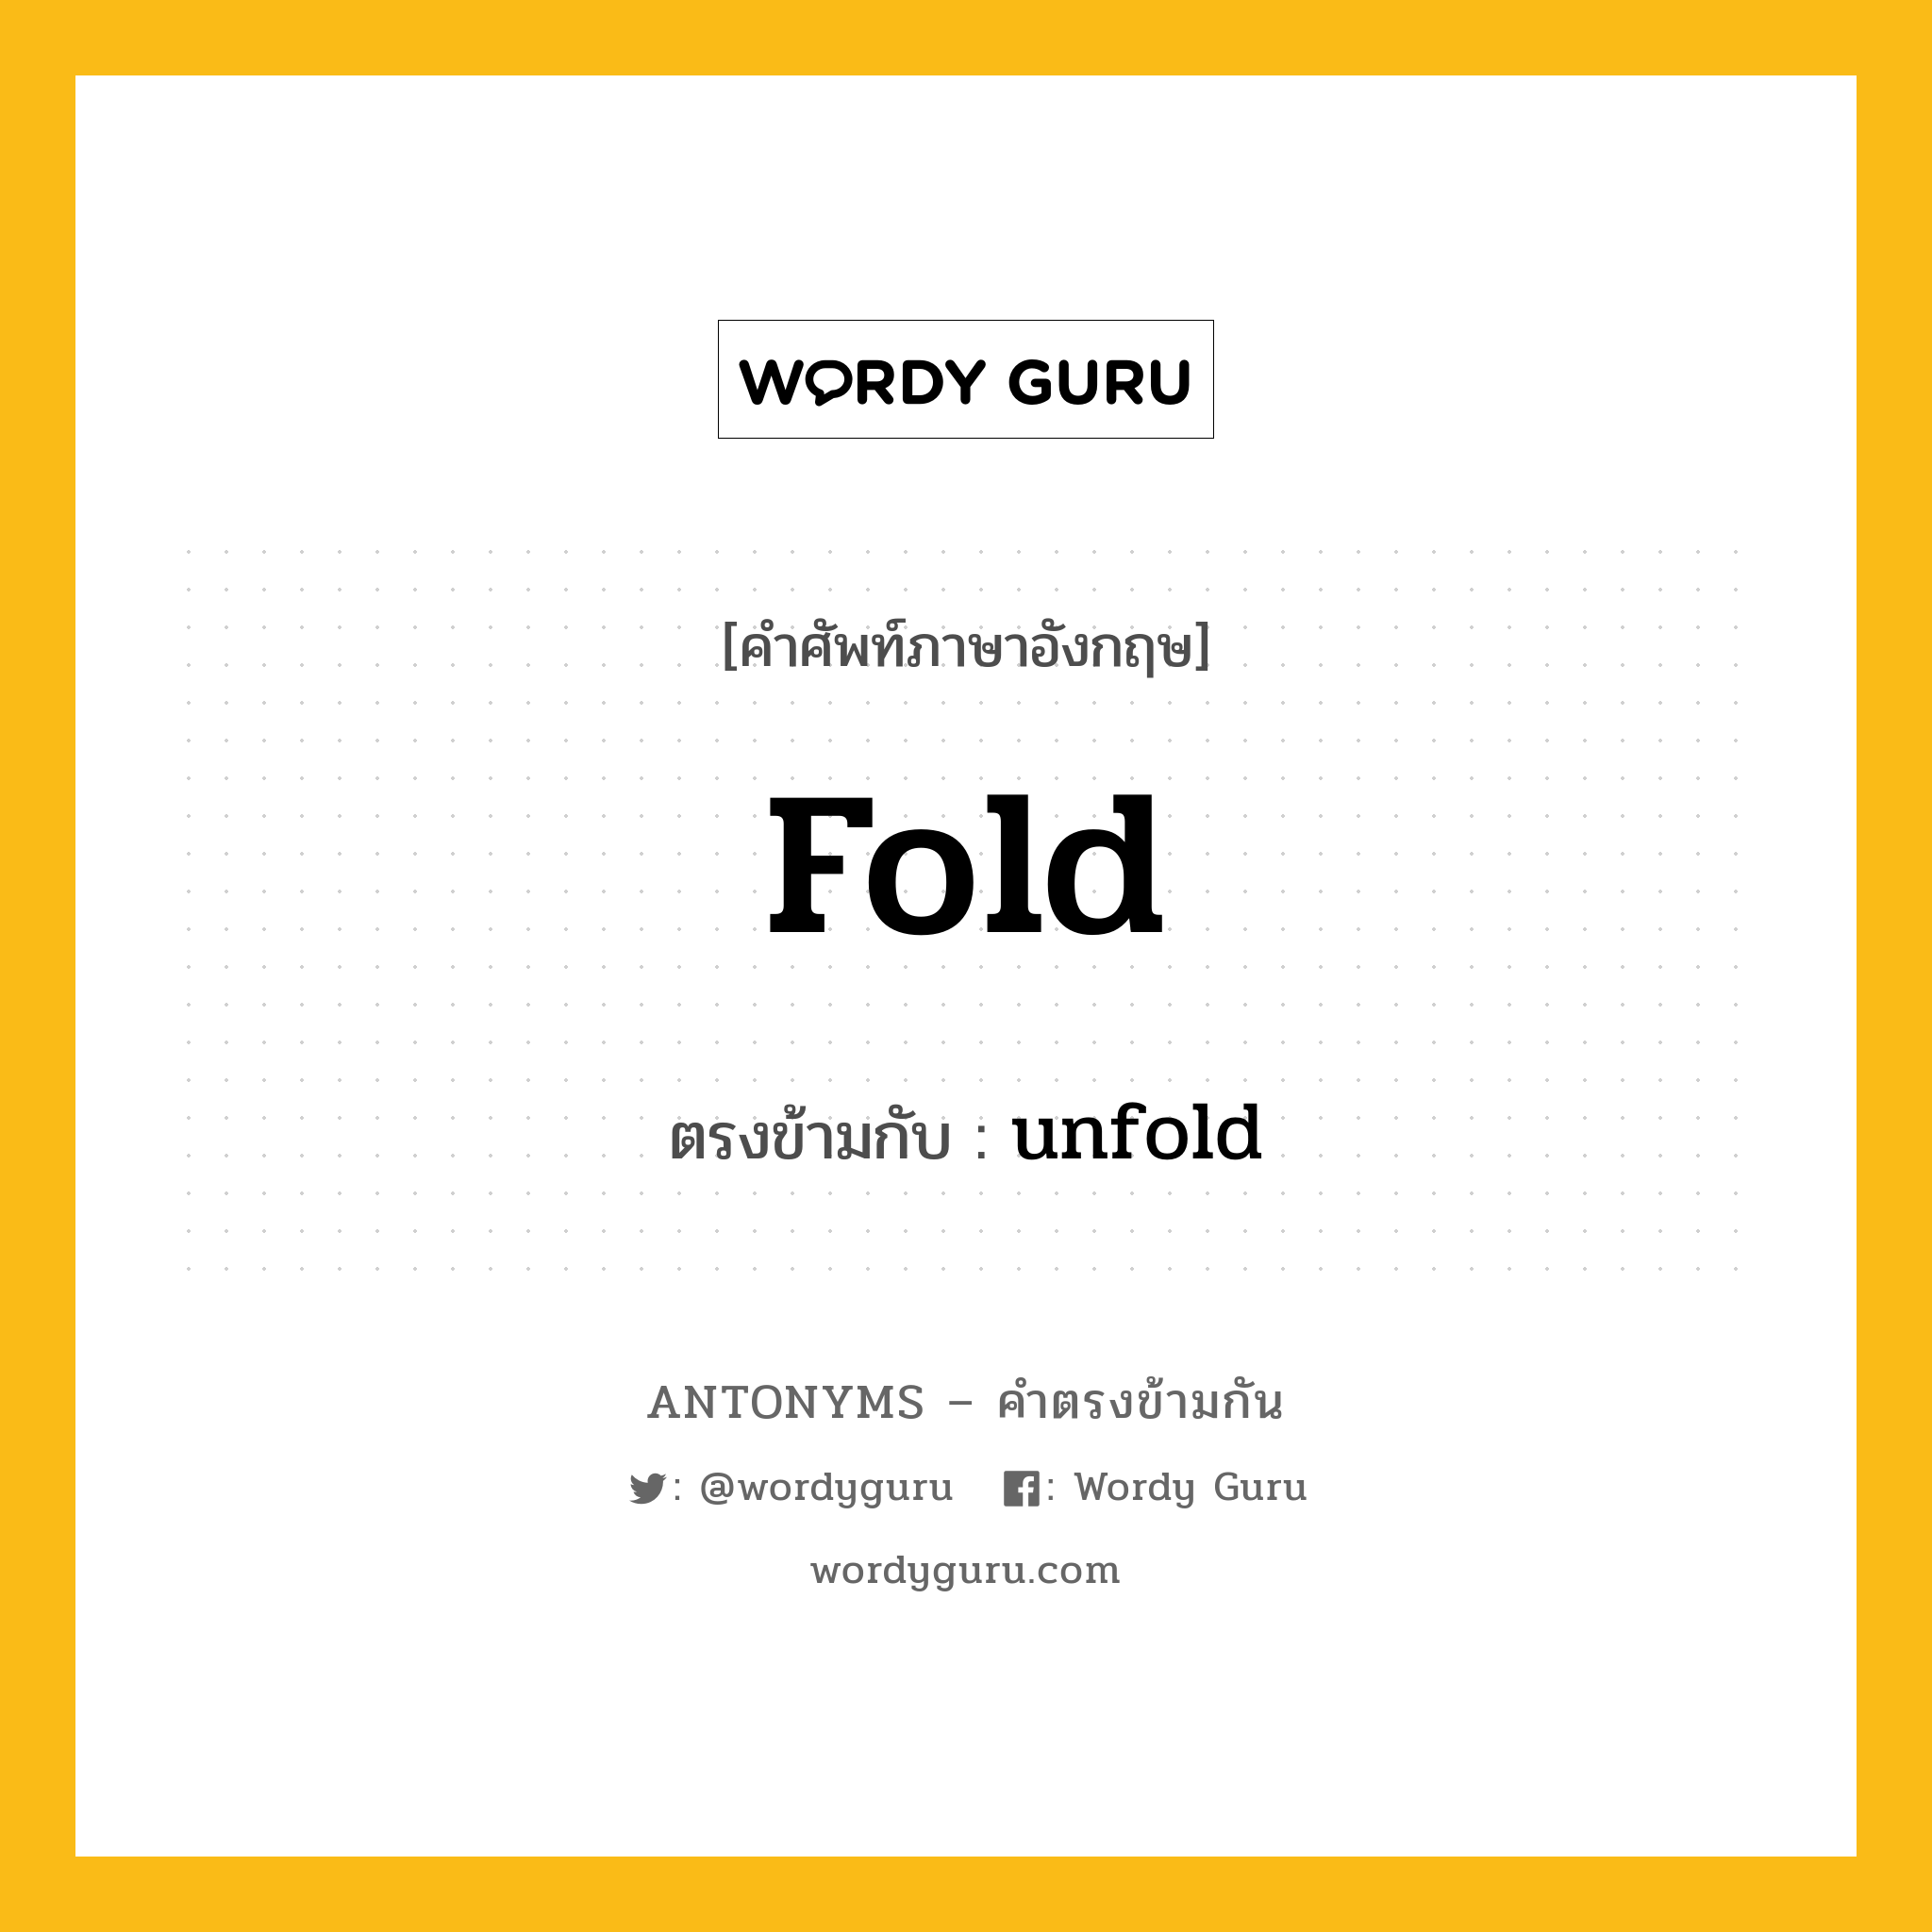 fold เป็นคำตรงข้ามกับคำไหนบ้าง?, คำศัพท์ภาษาอังกฤษ fold ตรงข้ามกับ unfold หมวด unfold